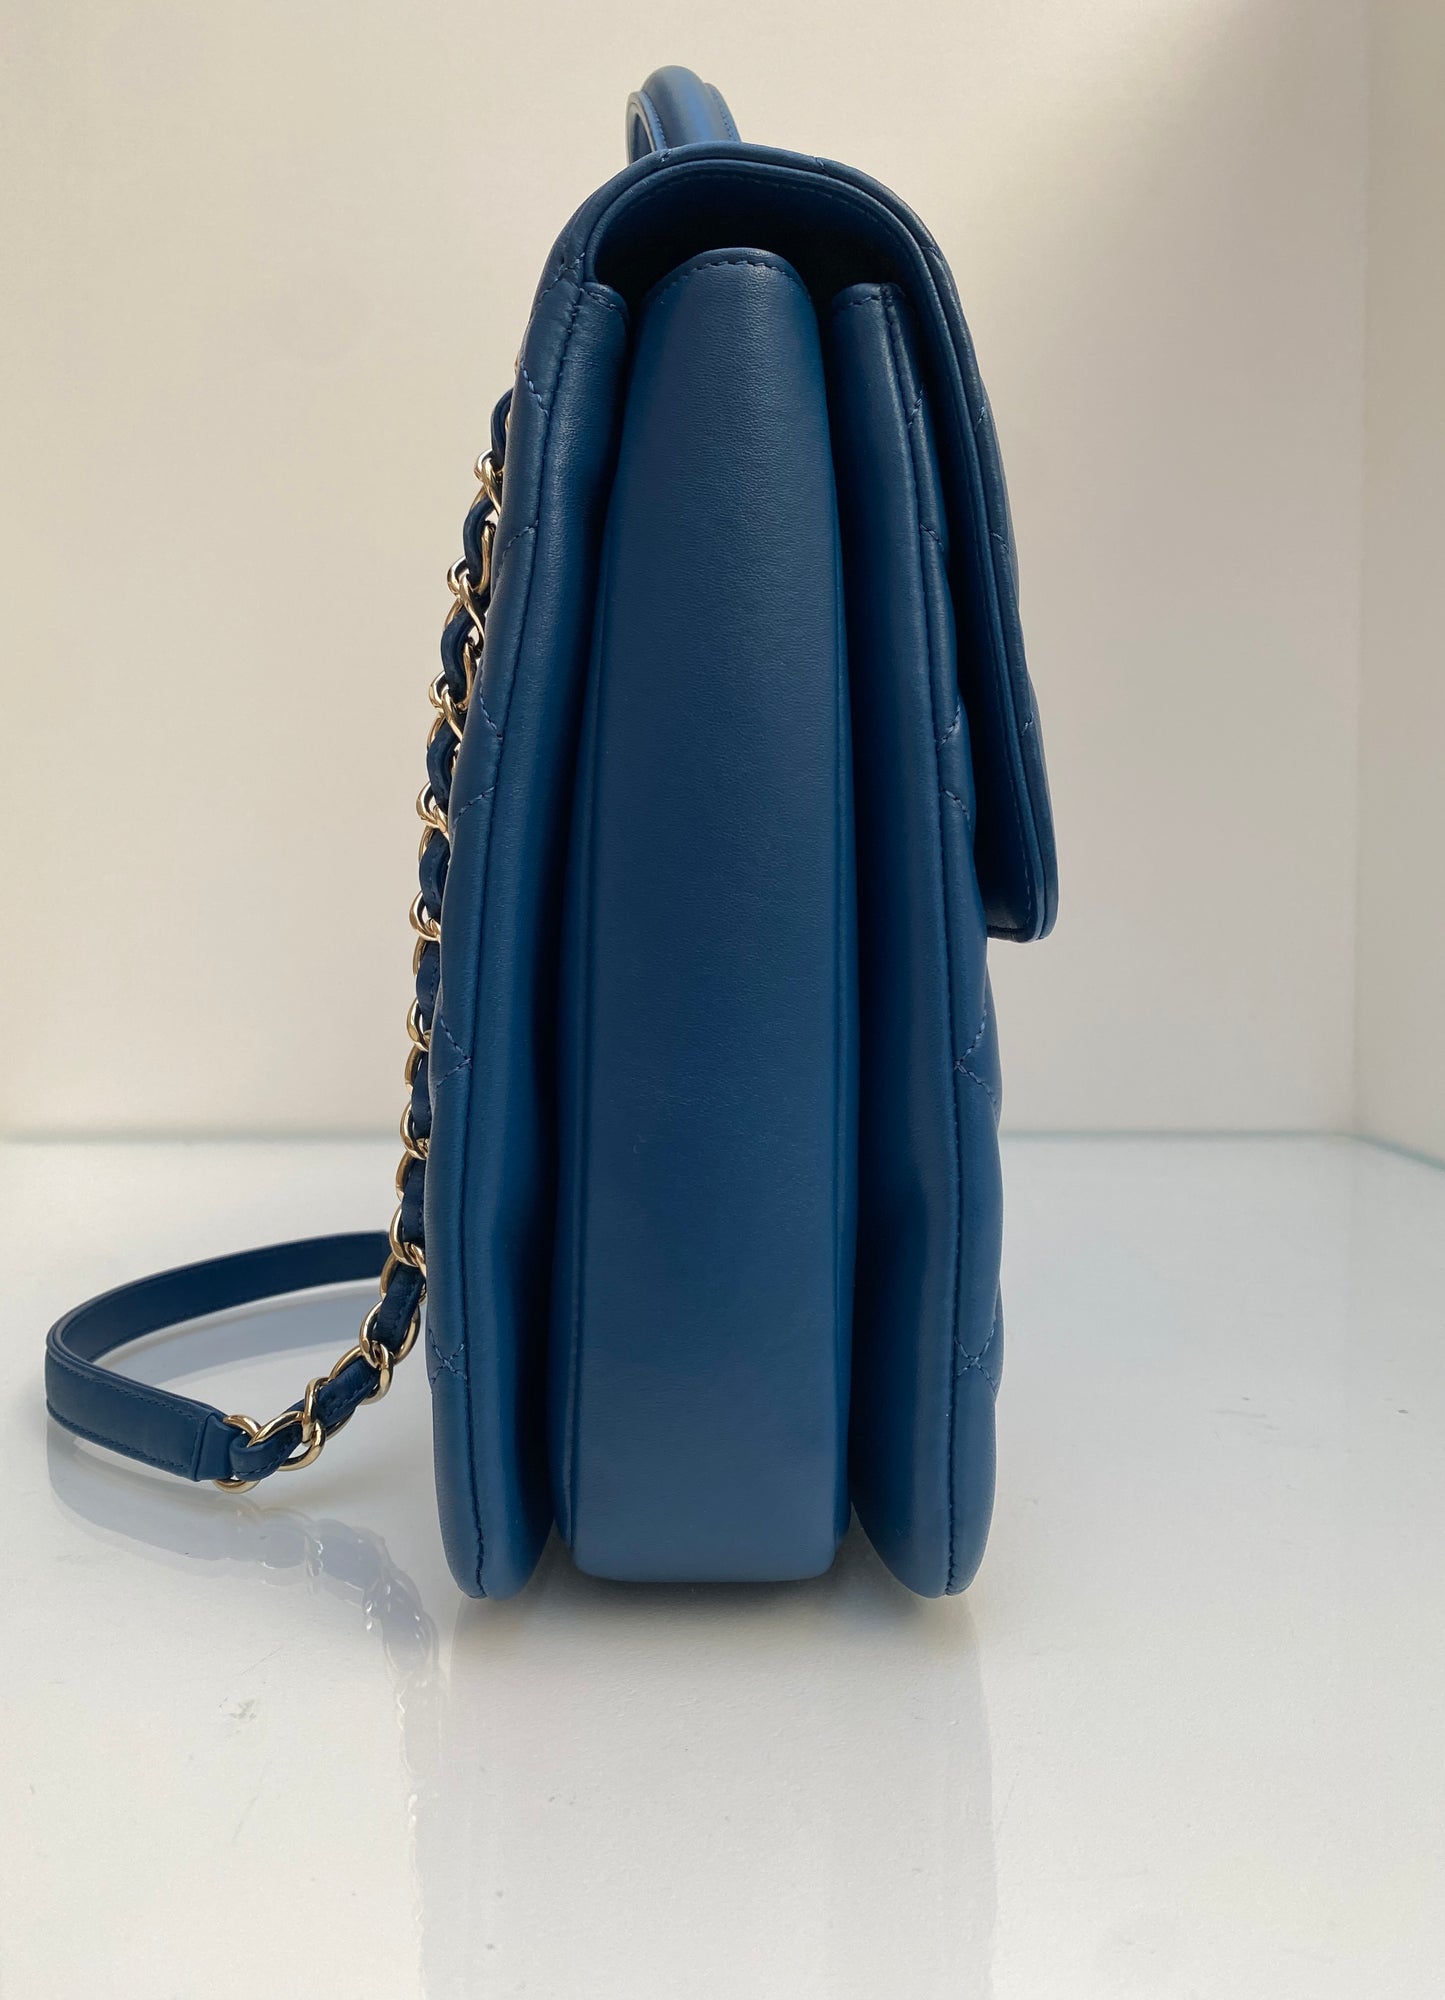 Chanel Blue Lambskin Leather Trendy GHW